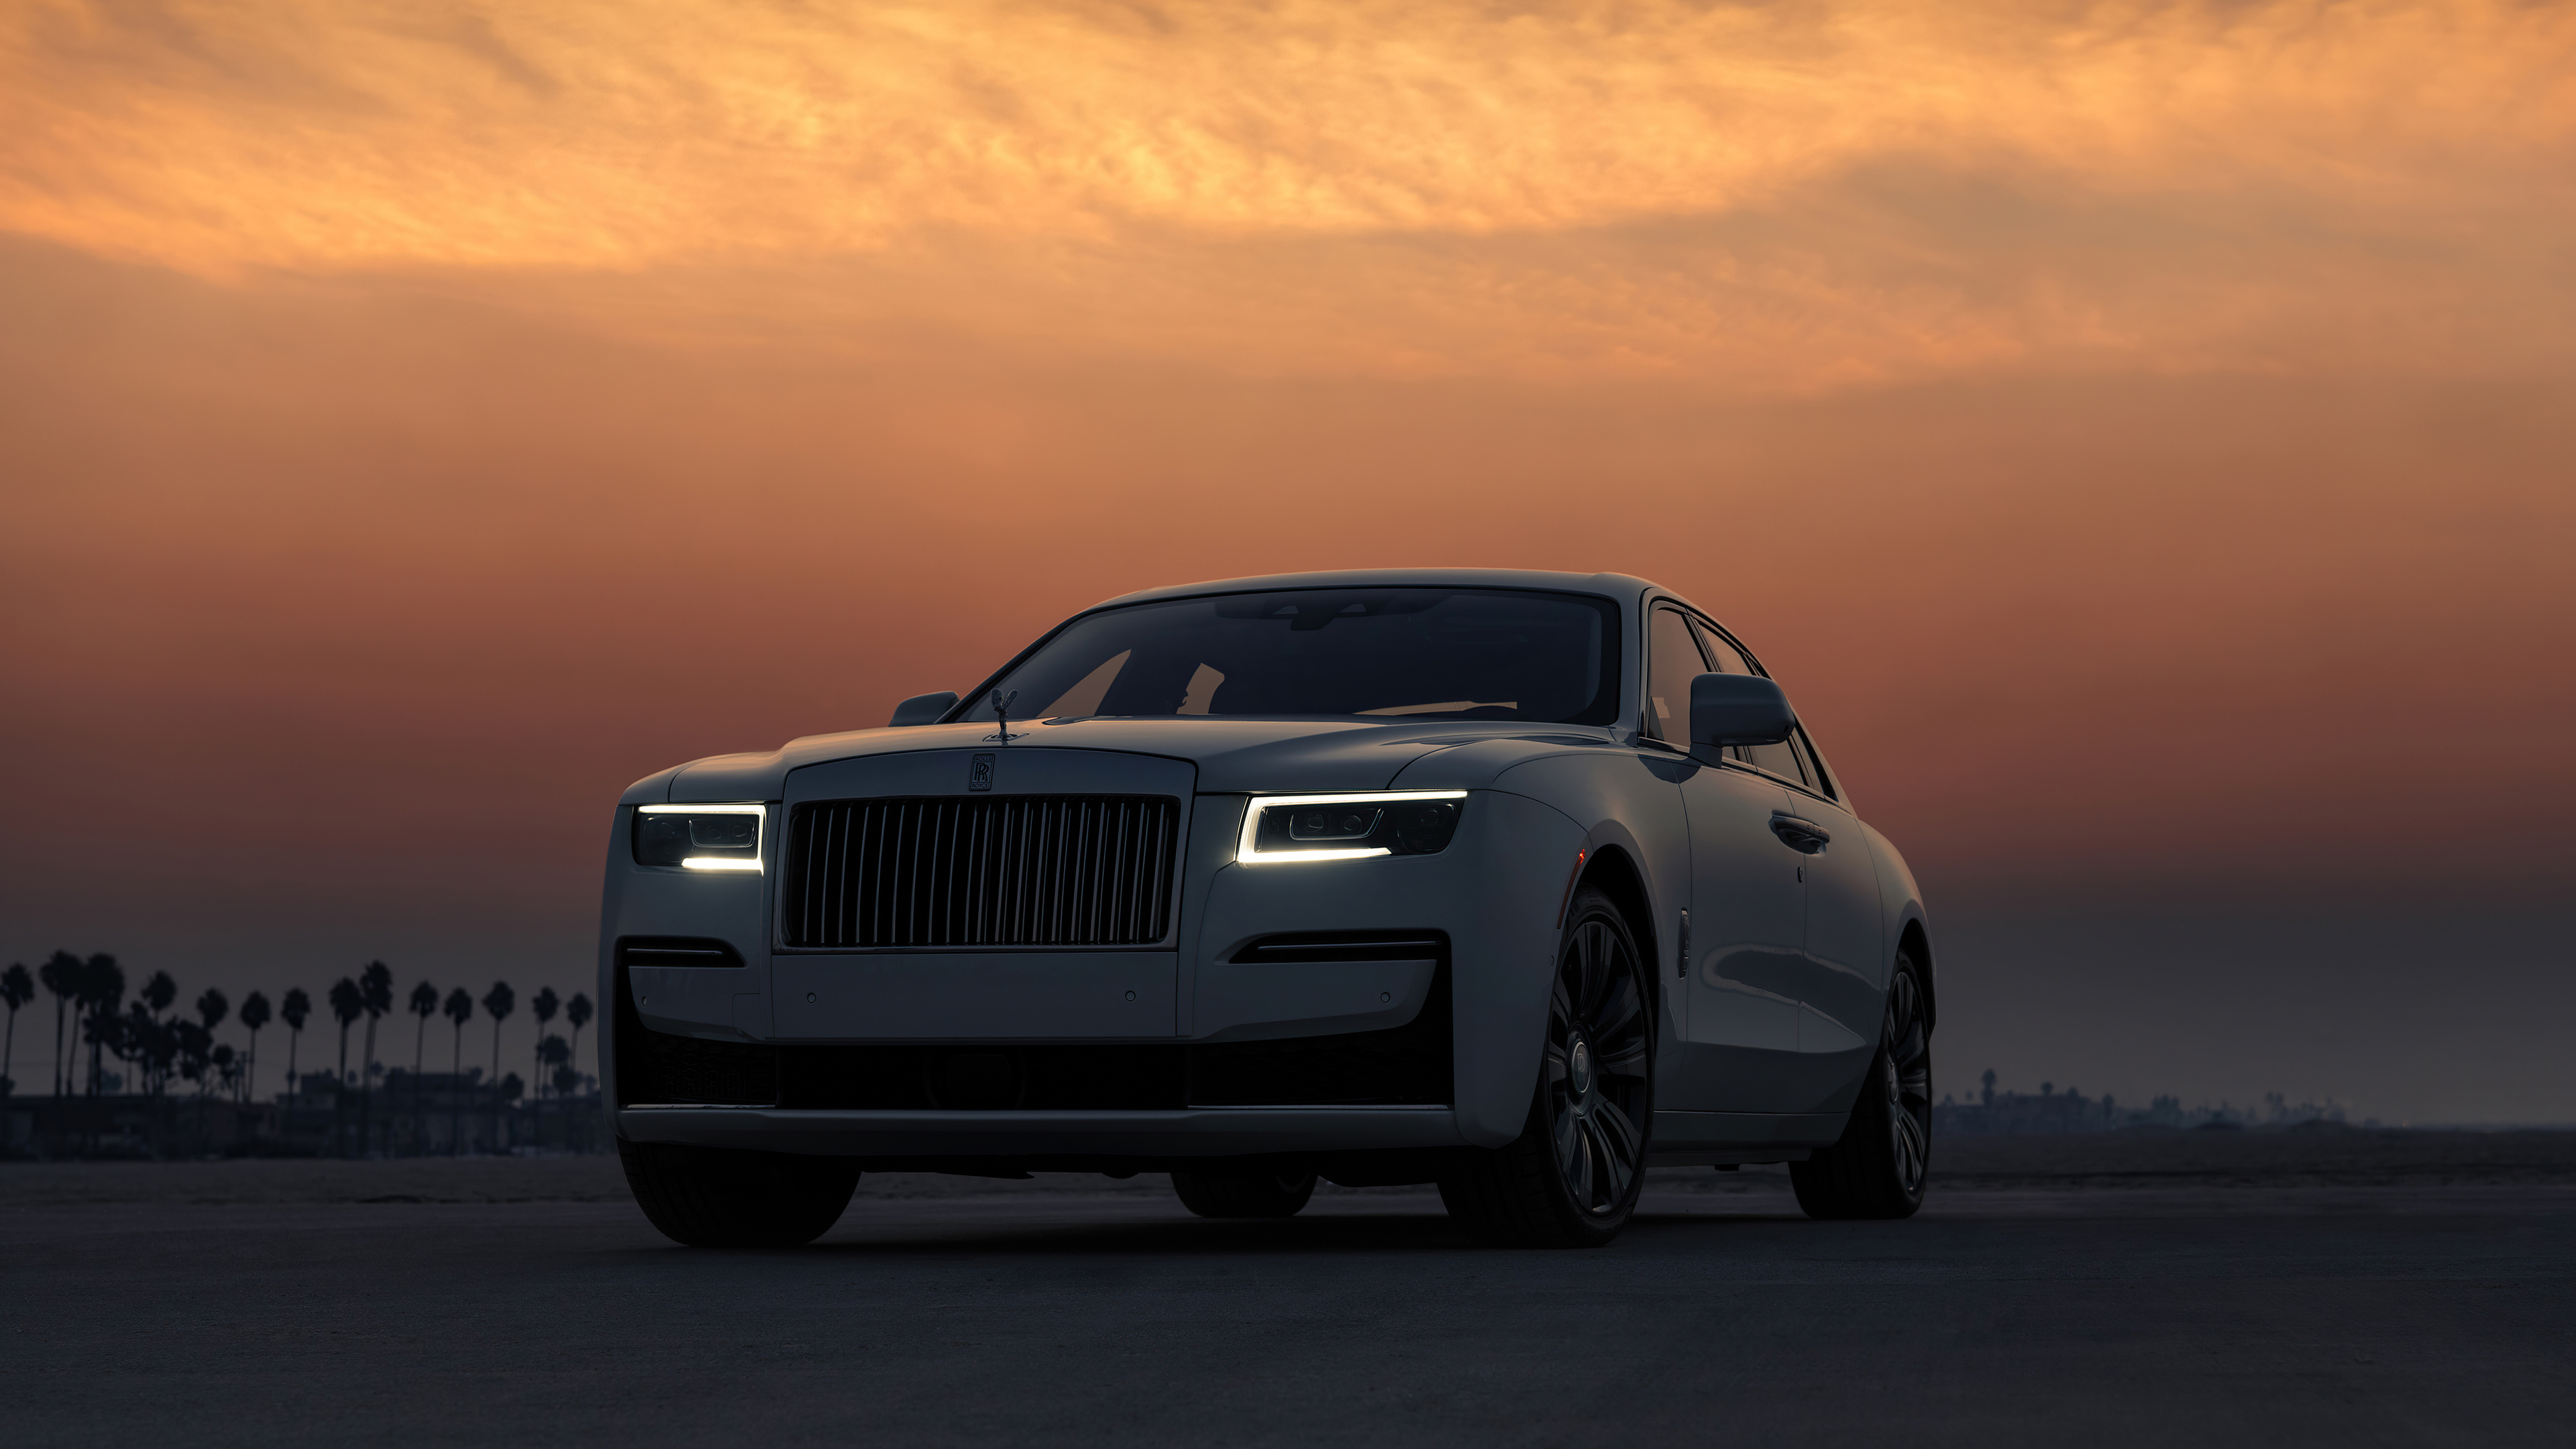 Rolls-Royce Ghost, 5k resolution, HD wallpapers, Exquisite luxury, 3840x2160 4K Desktop